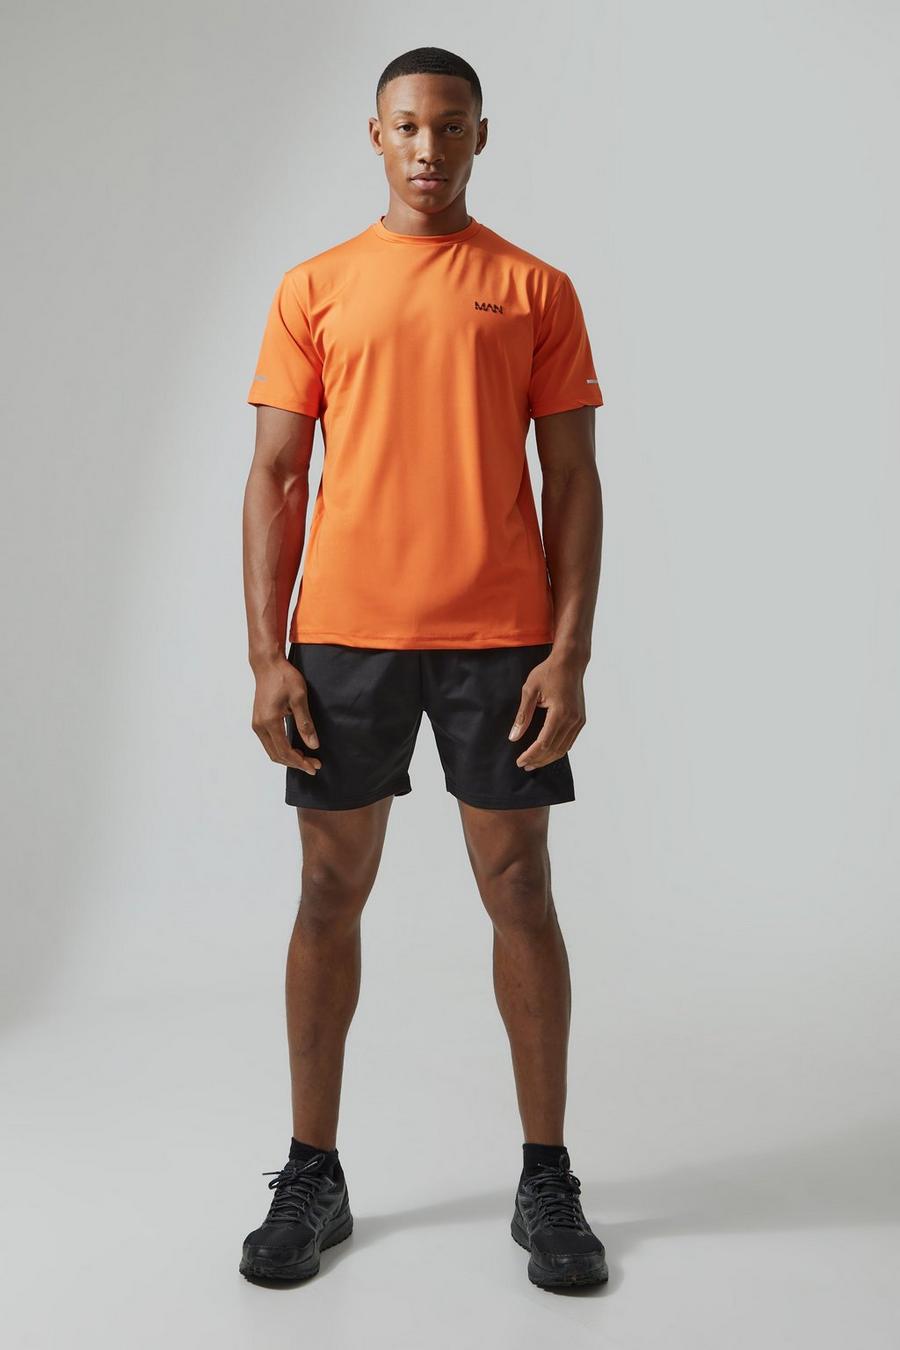 Man Active Performance T-Shirt und Shorts, Orange